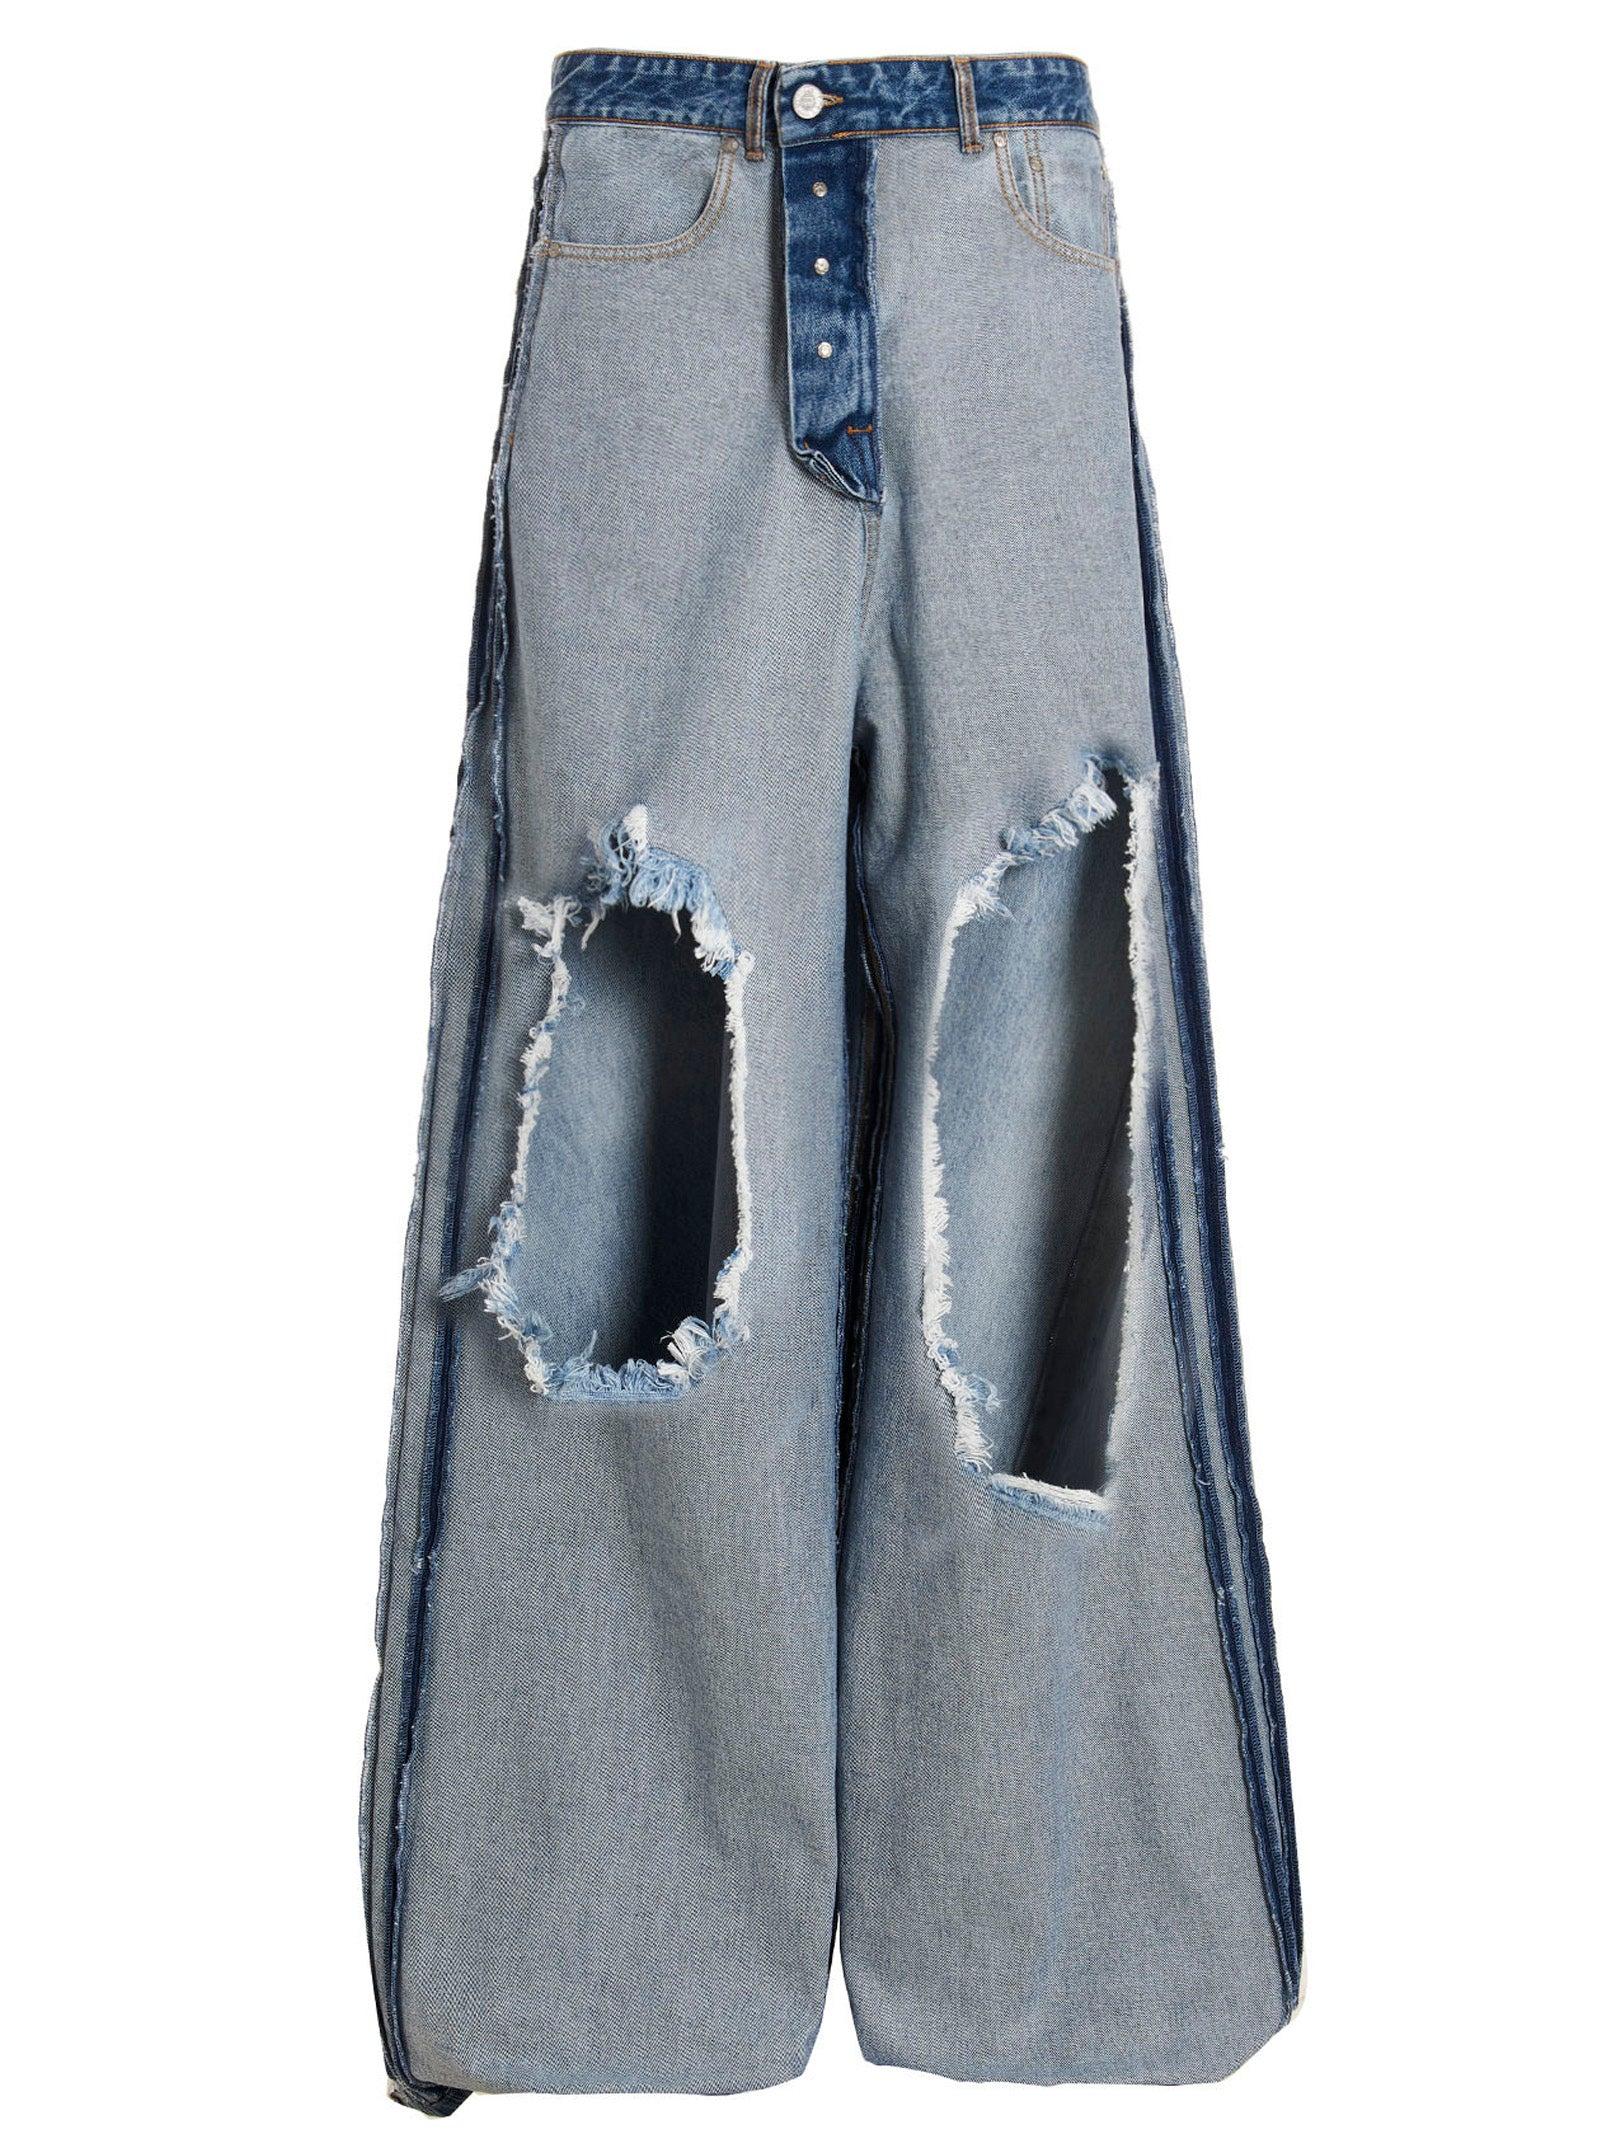 新品《 VETEMENTS 》Inside-Out Baggy Jeans 30